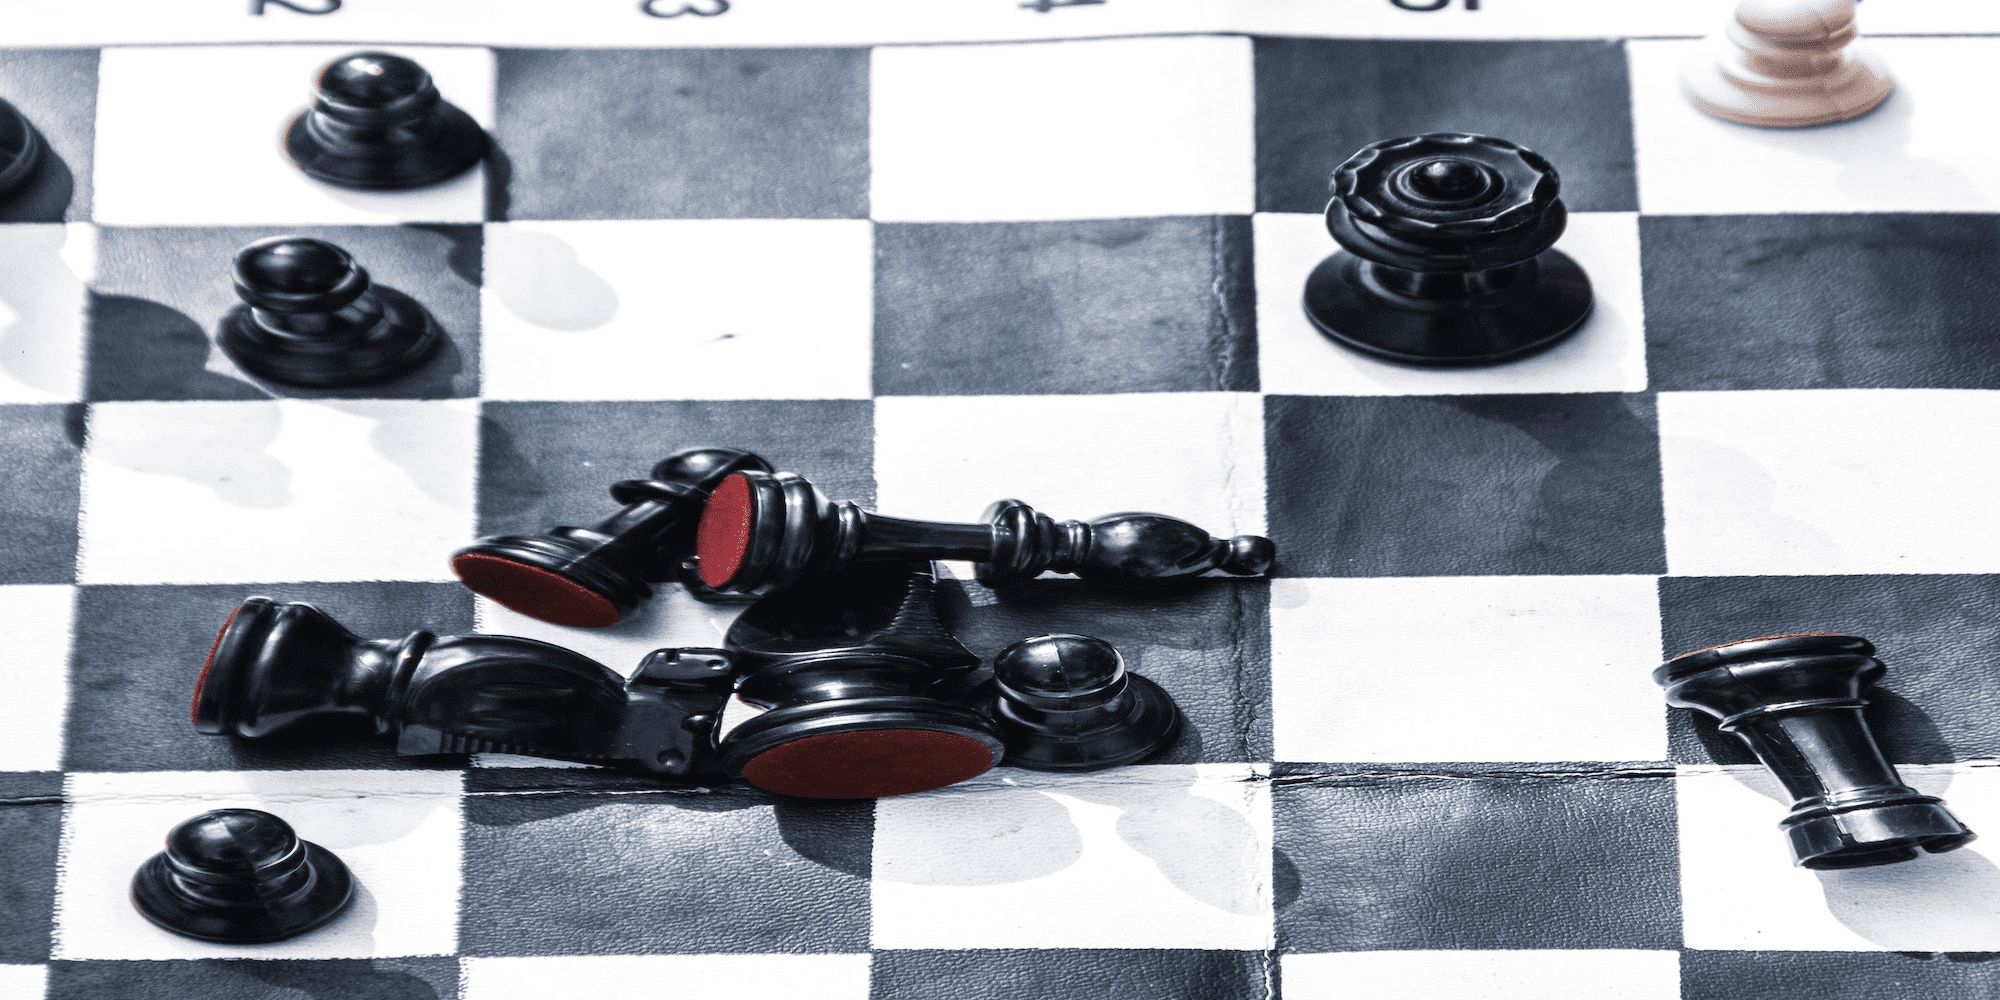 صورة تمديد للوحة شطرنج.